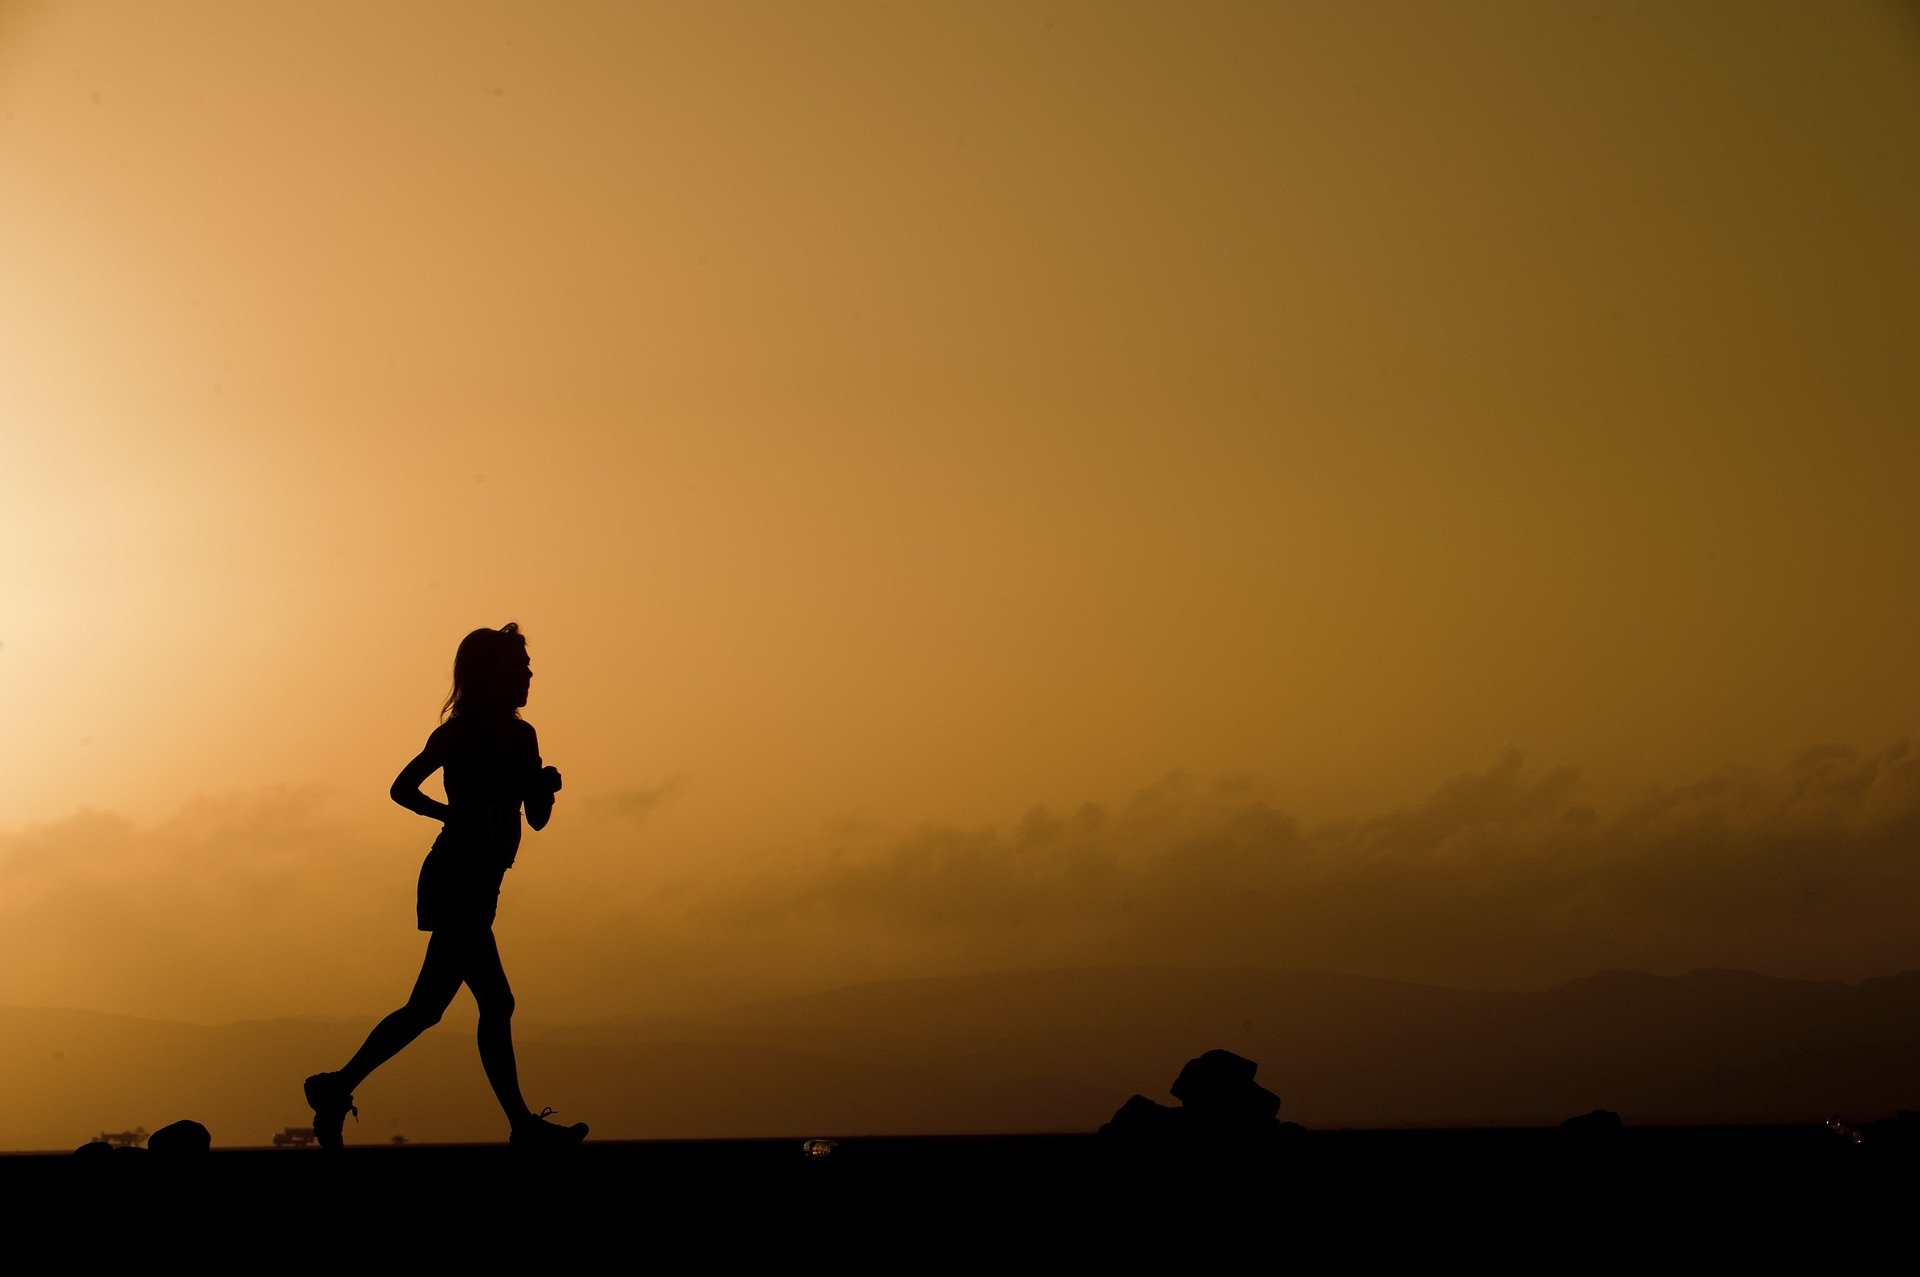 Sanidad, sobre hacer deporte: "Una persona que corra sola no implica un riesgo"